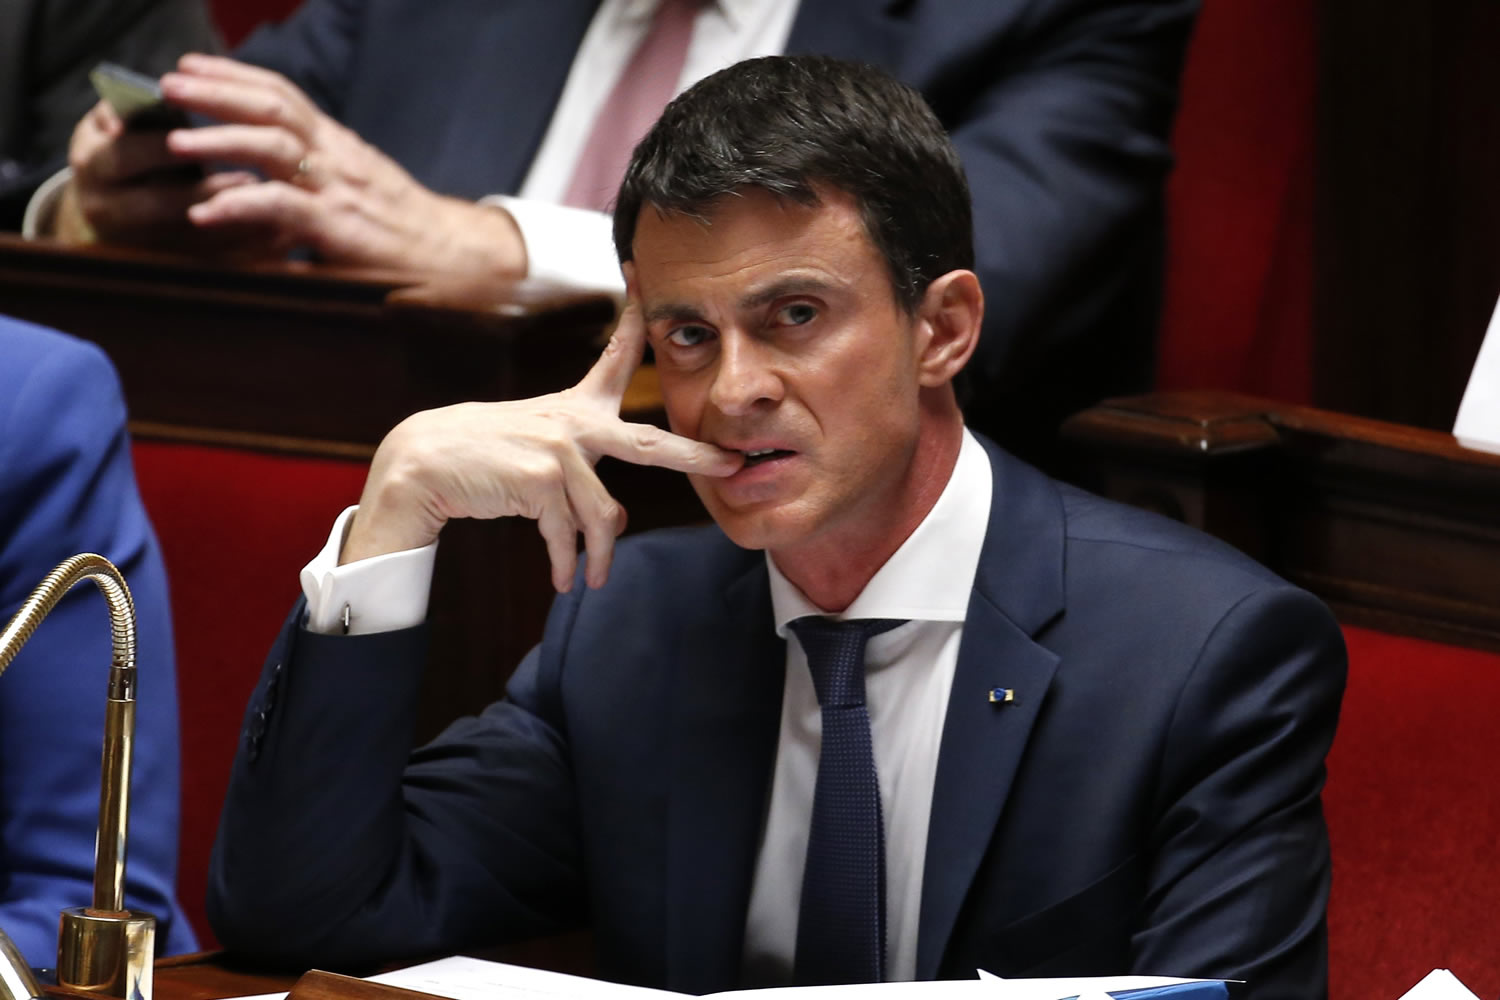 Francia, al límite de sus recursos militares, mete prisa a Rajoy